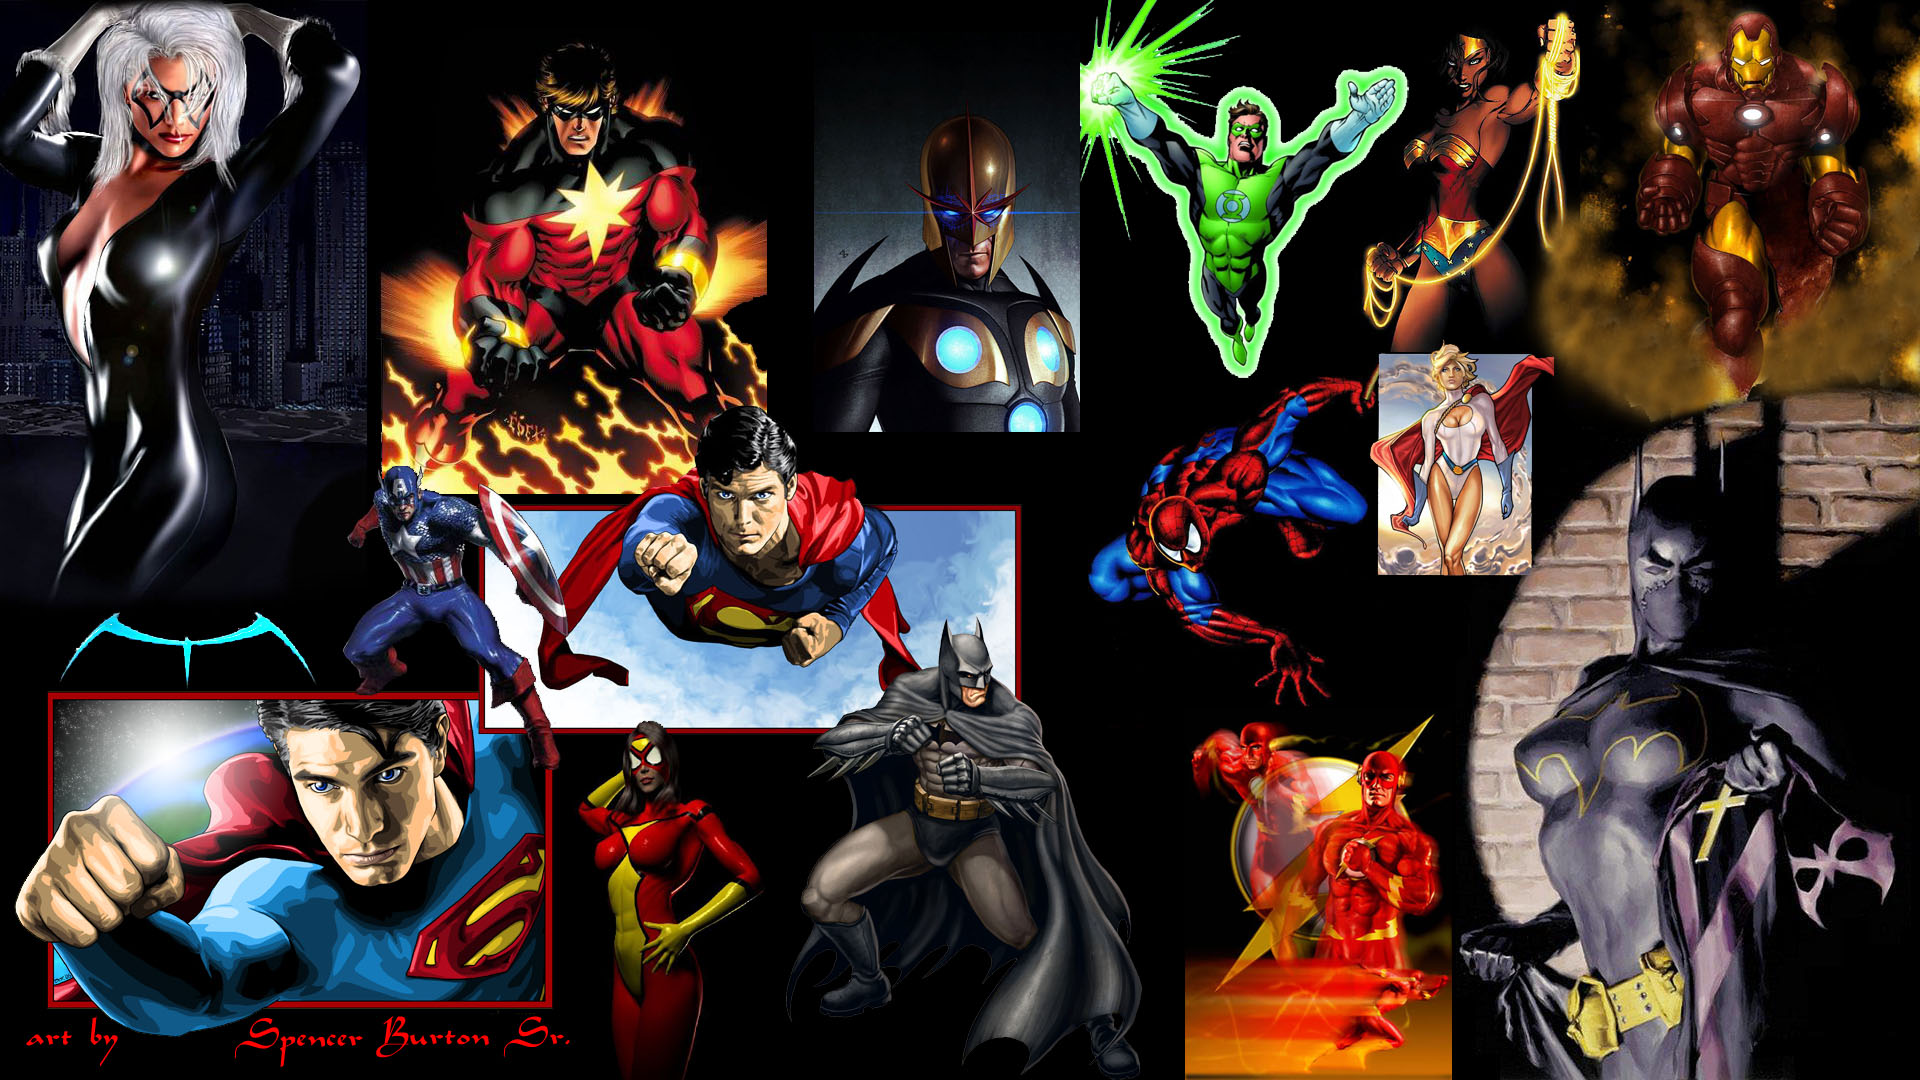 슈퍼 영웅의 hd 벽지,영웅,슈퍼 히어로,소설 속의 인물,배트맨,만화